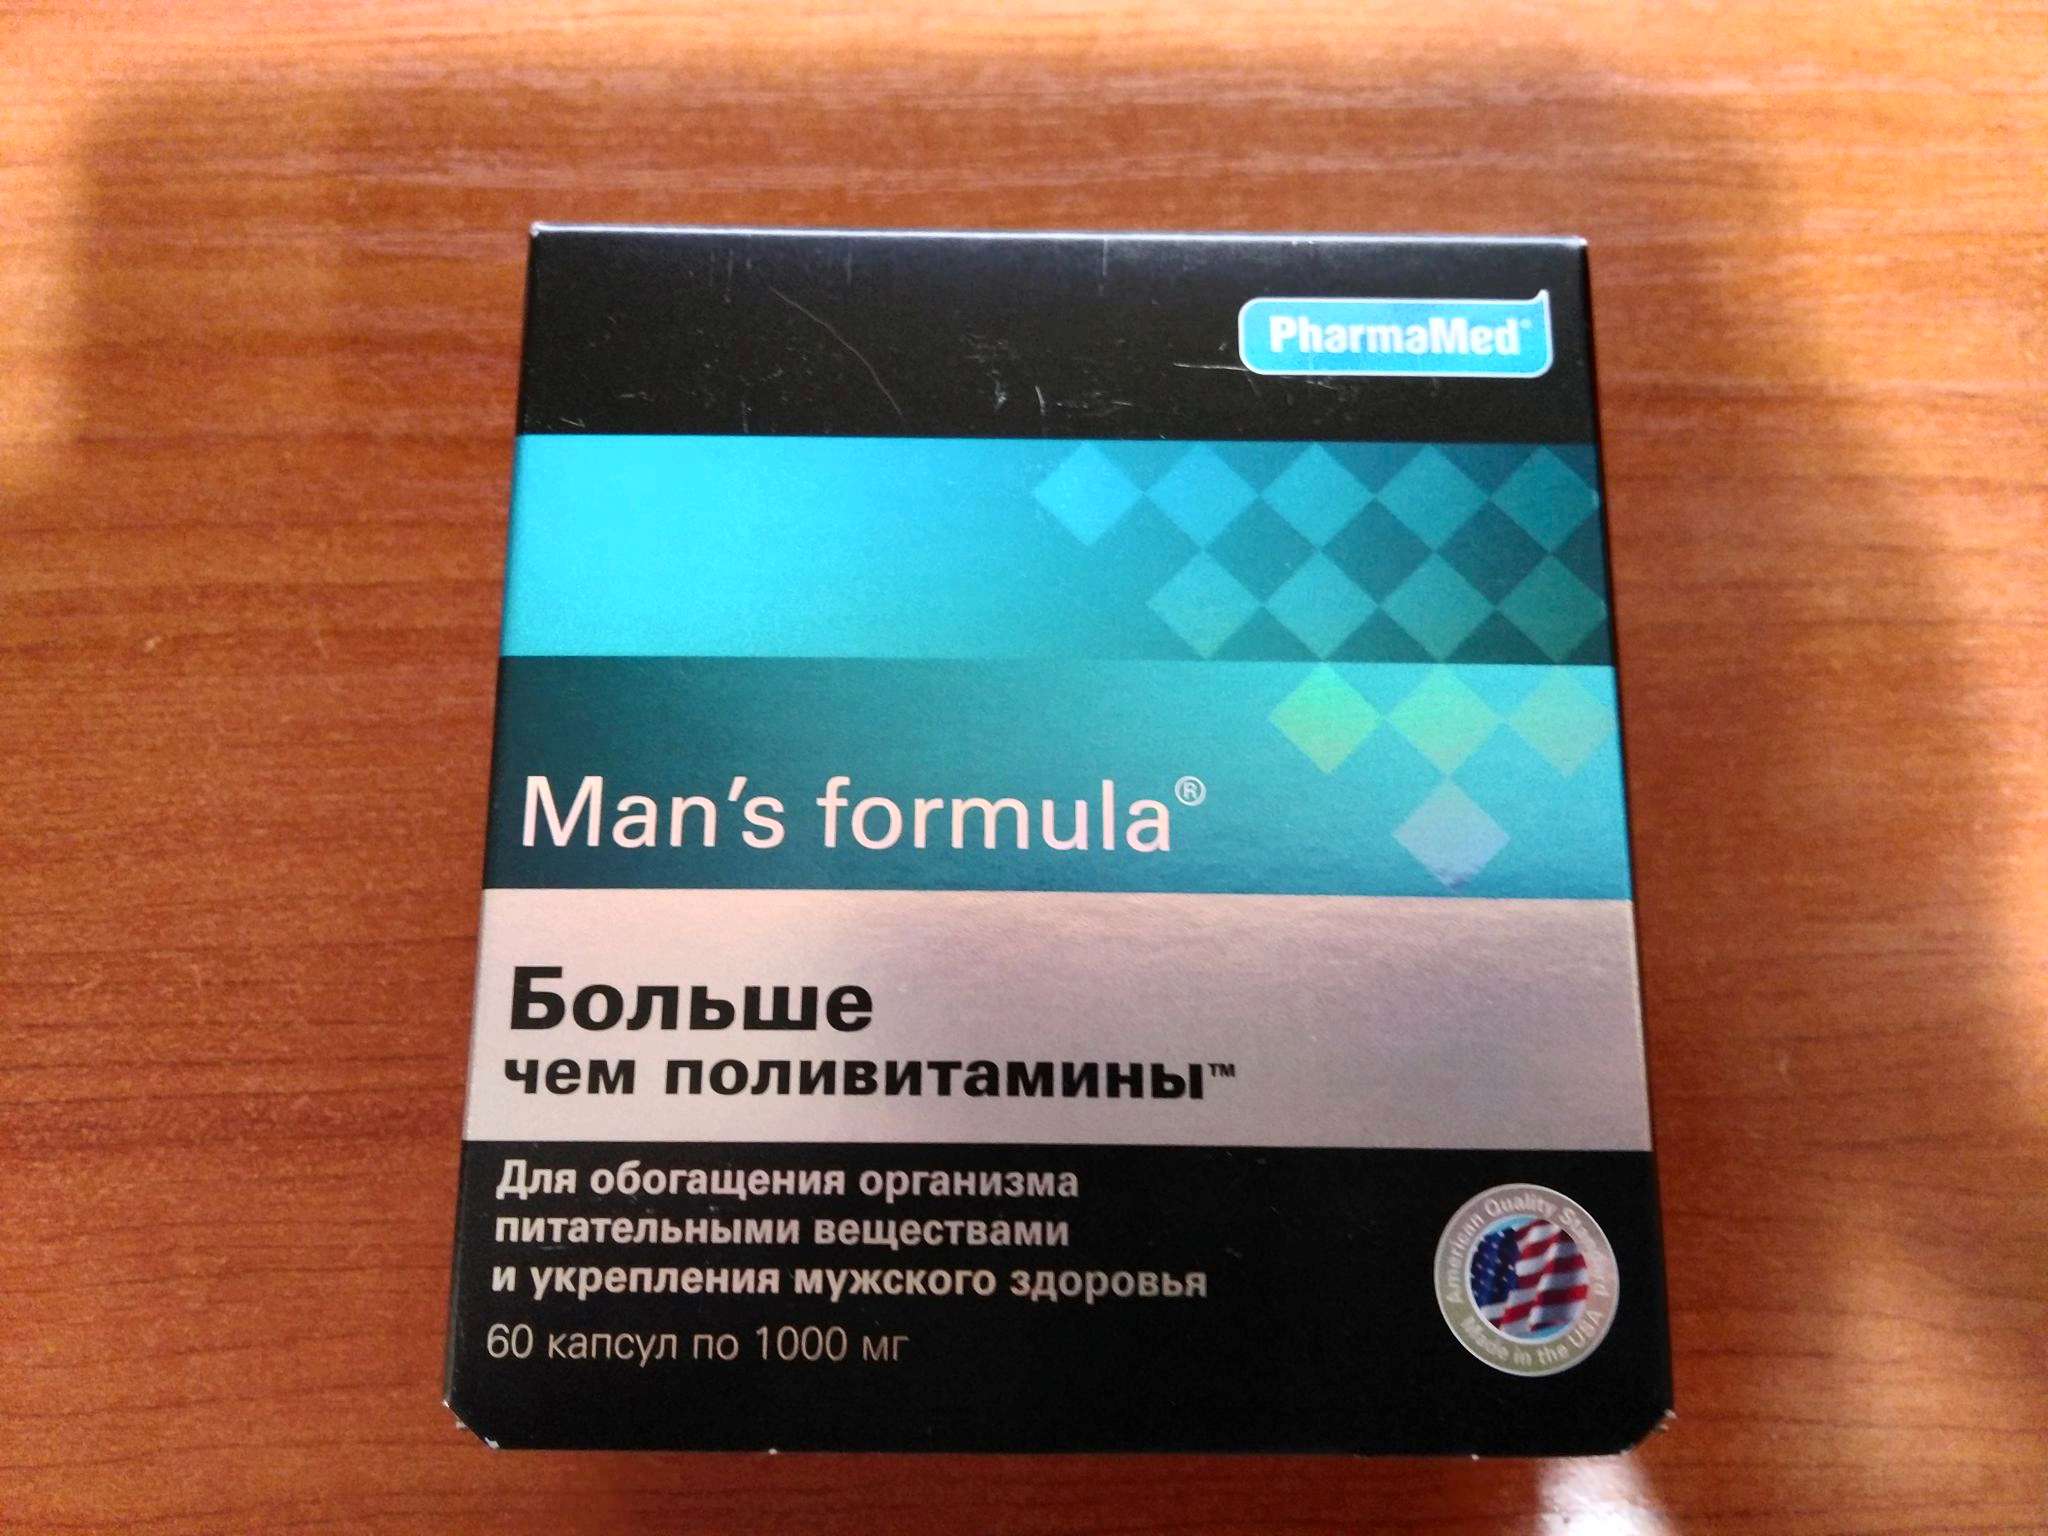 Витамины для мужчин перед. Менс потенциал форте. Mans Formula витамины для мужчин. Formula man's (больше,чем поливитамины капс n60 Вн ). Витамины man's Formula потенциал форте.